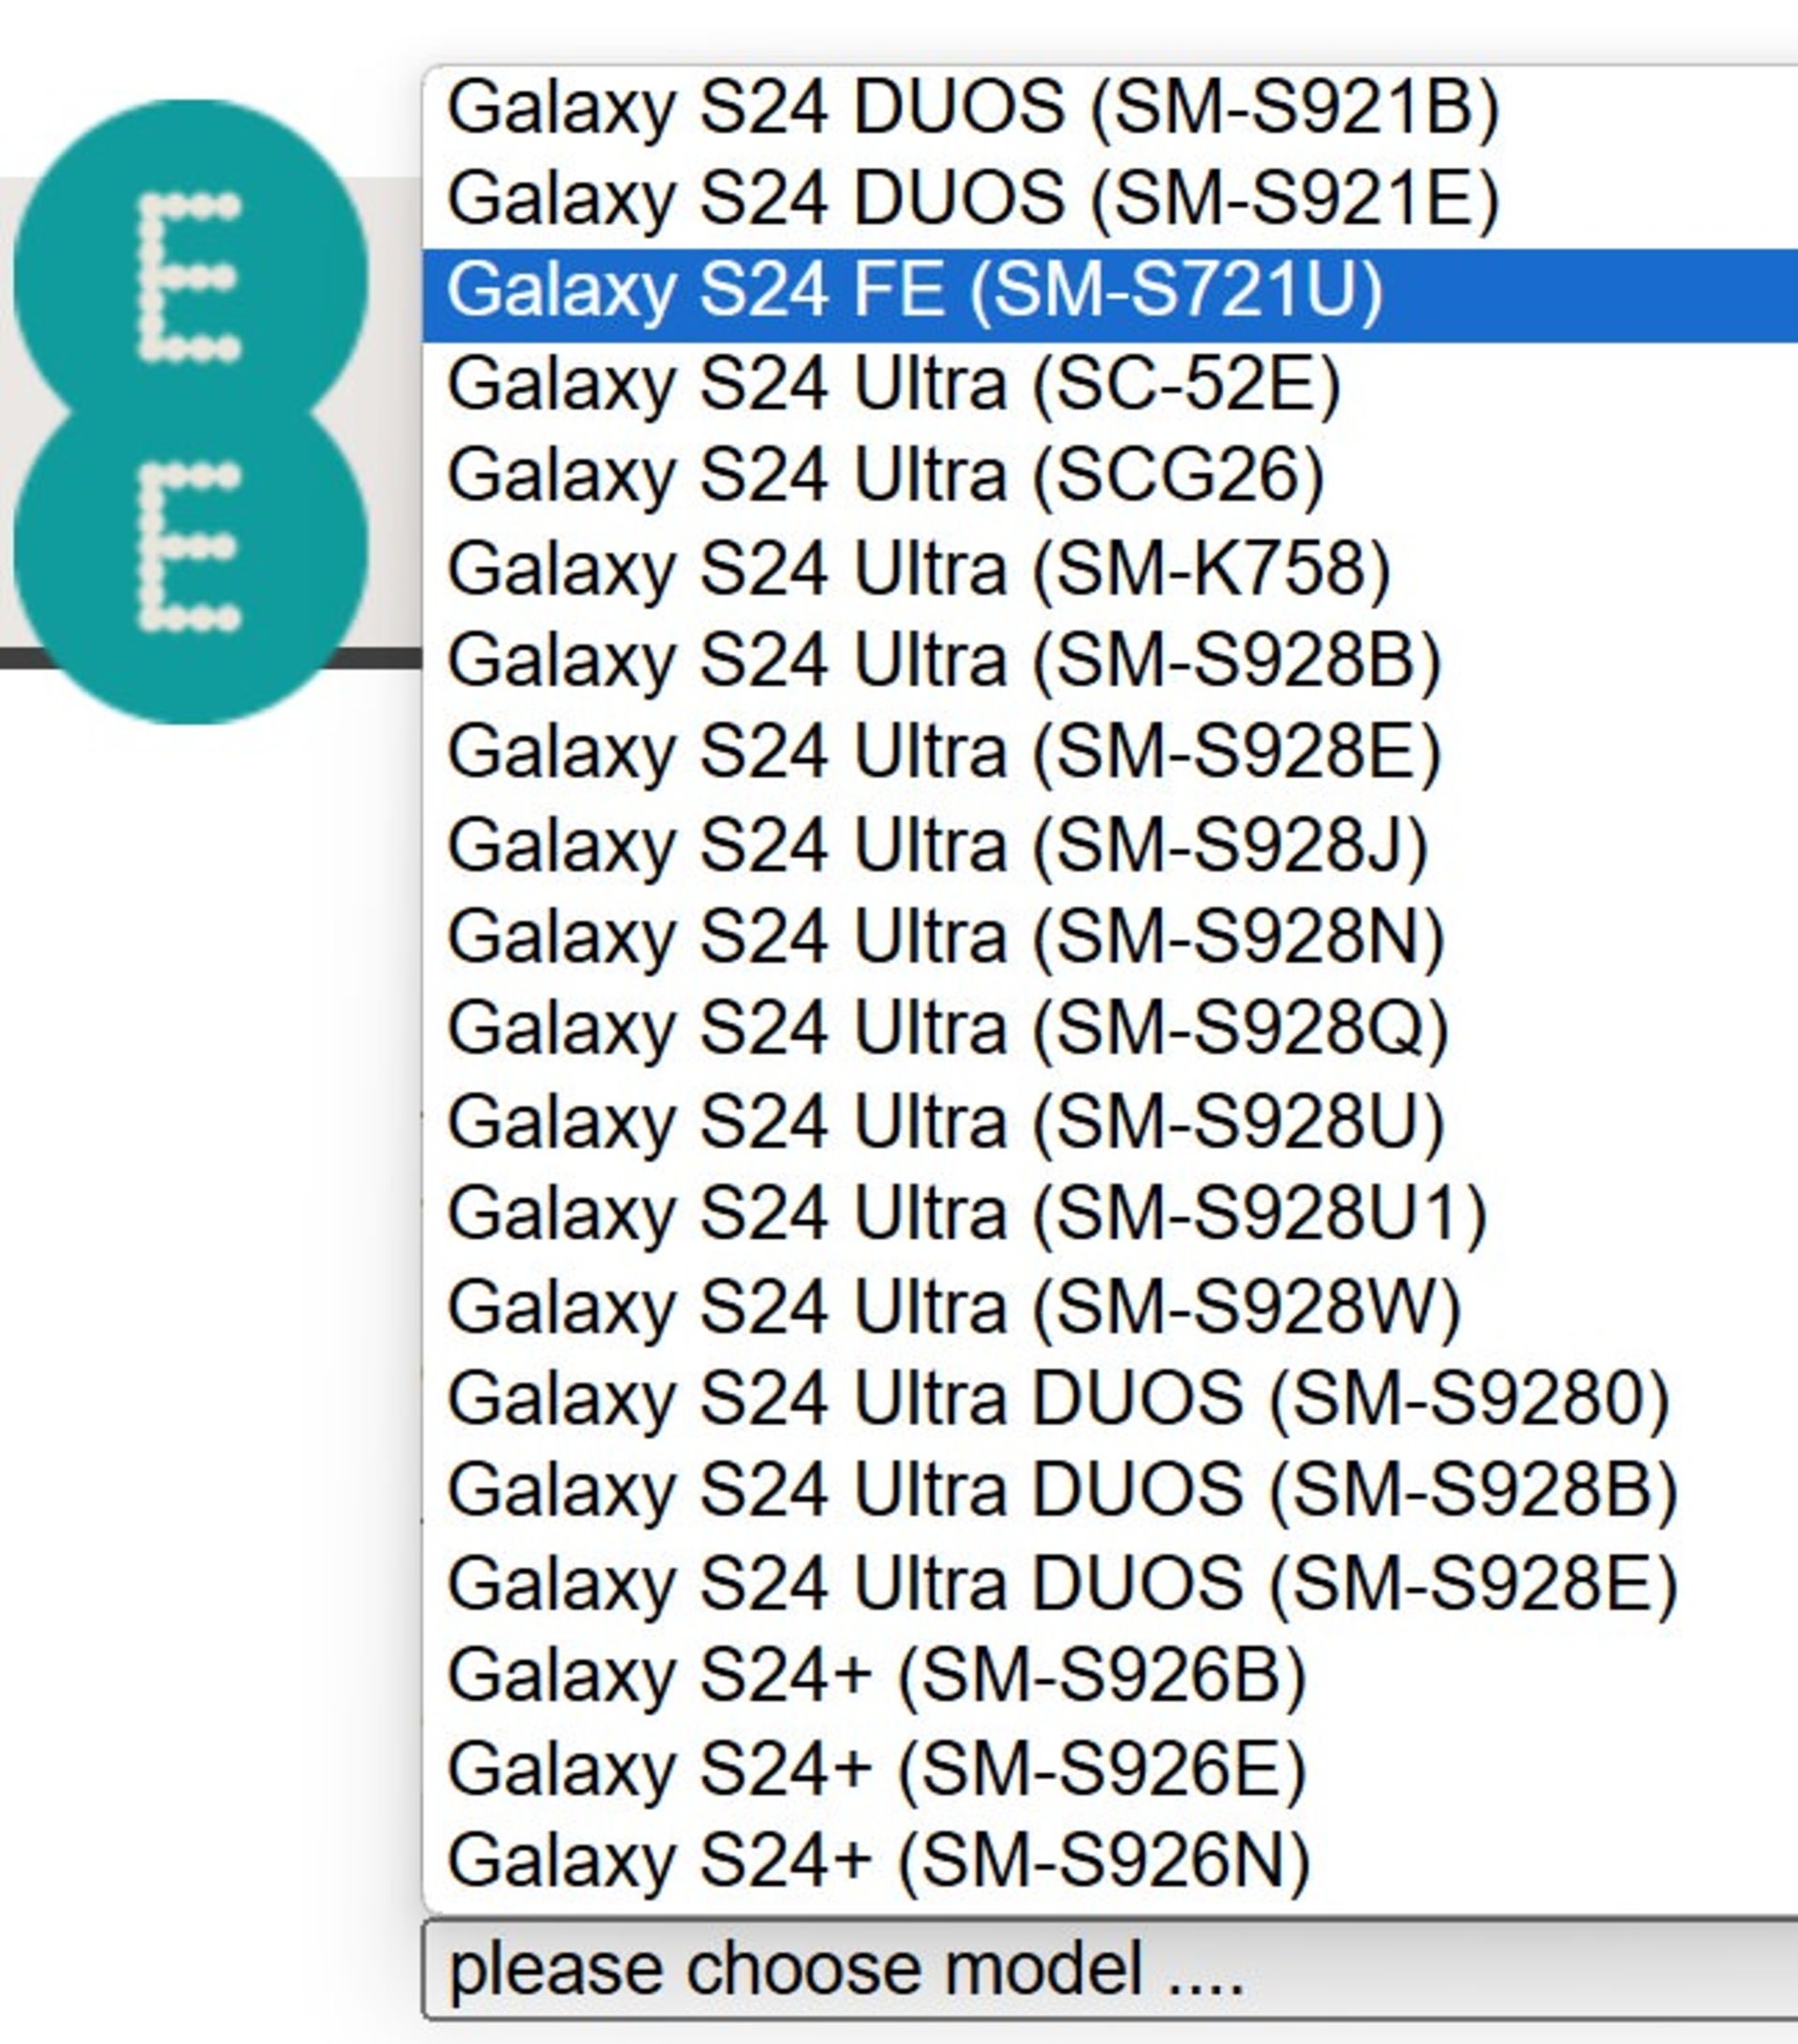 حضور گوشی گلکسی S24 FE در لیست اپراتور EE با شماره مدل SM-721U